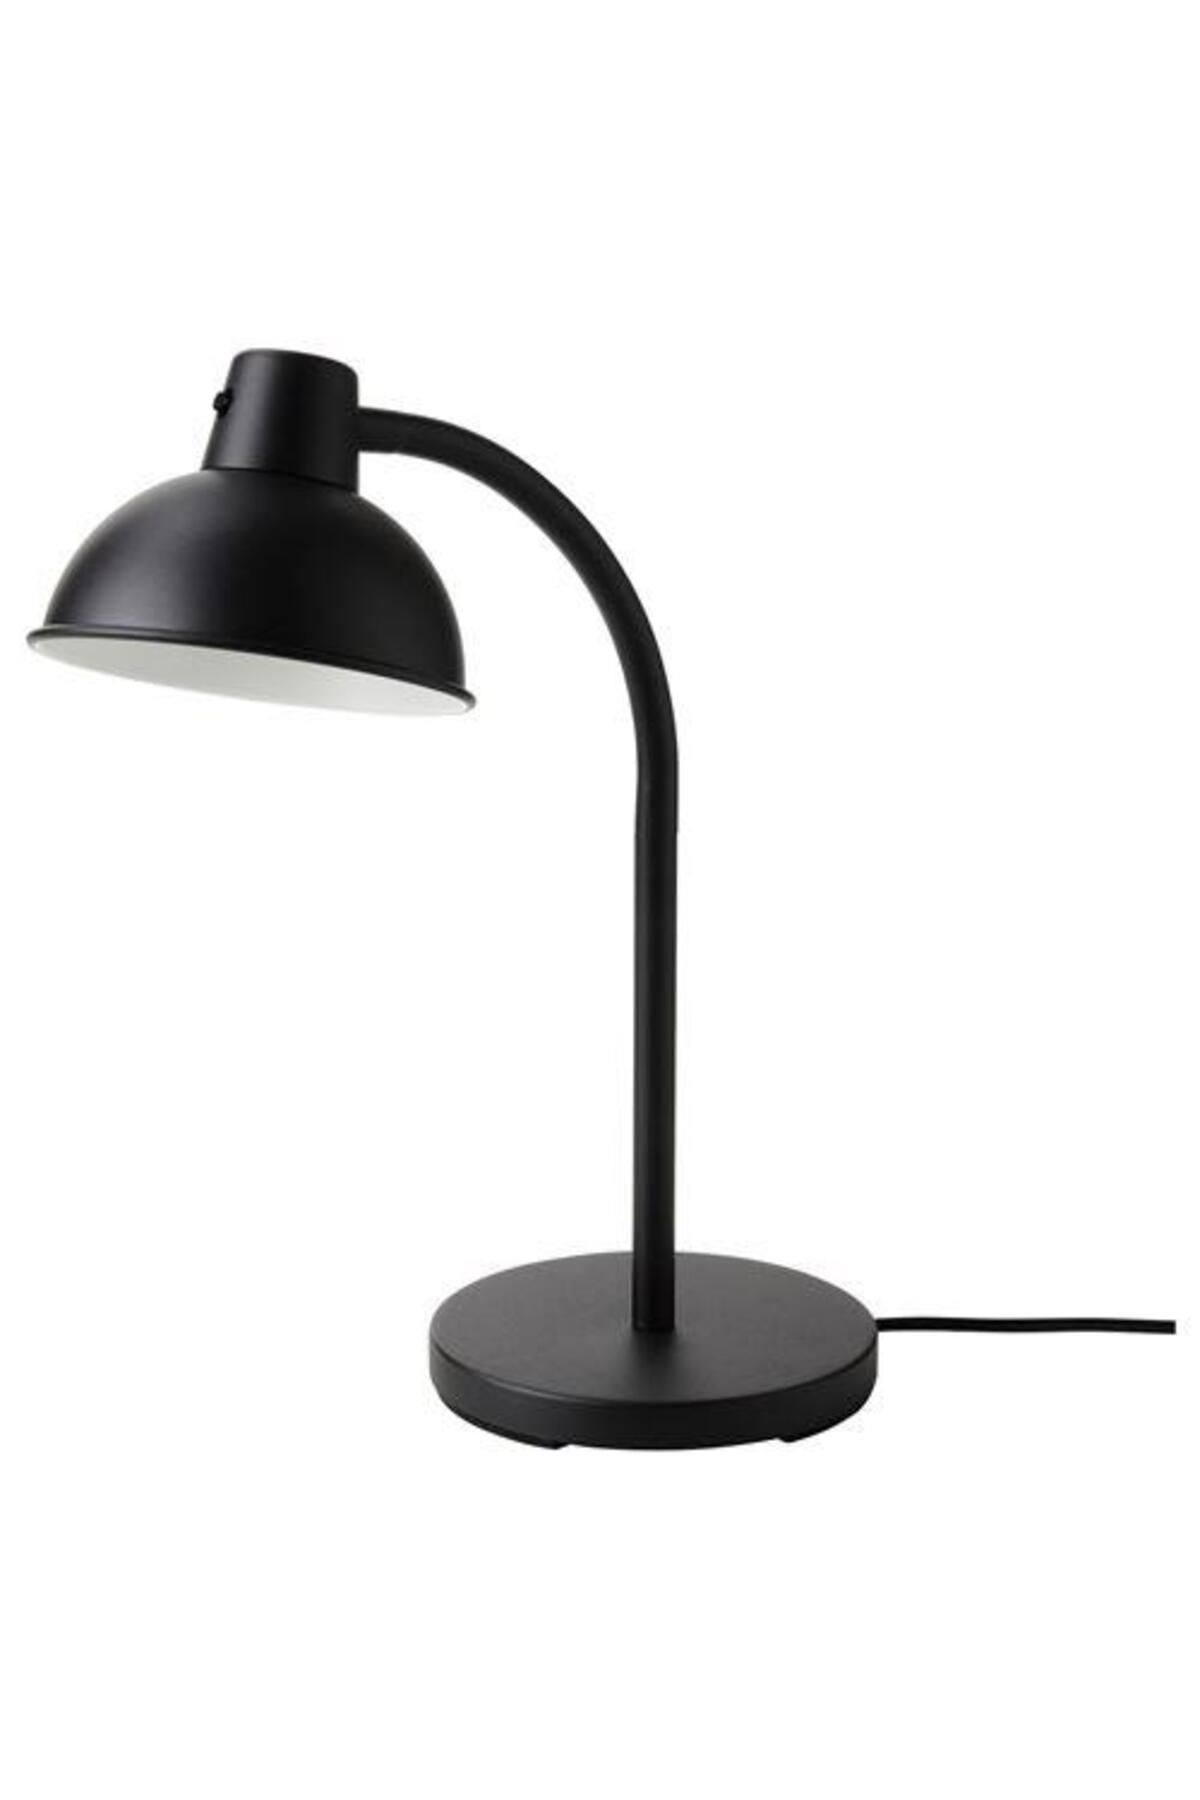 IKEA Çalışma-masa Lambası Meridyendukkan Siyah Renk 40 Cm Ayarlanır Başlık Okuma Lambası Dekorasyon